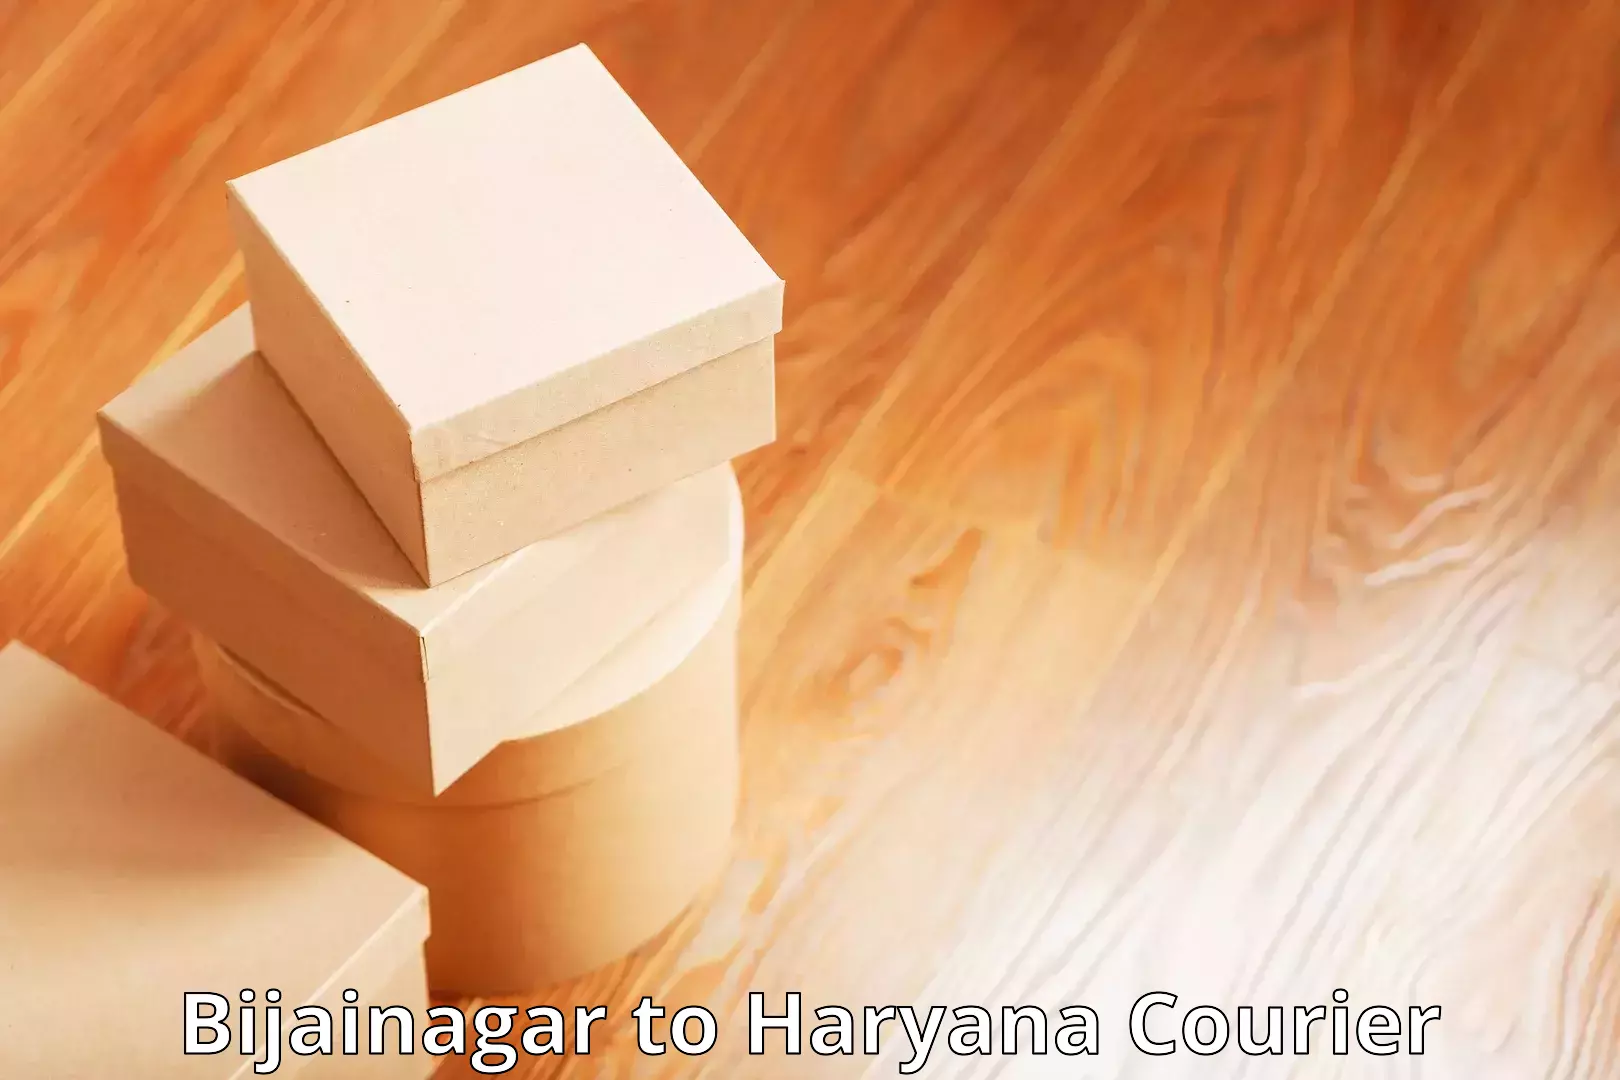 Seamless shipping experience Bijainagar to Chaudhary Charan Singh Haryana Agricultural University Hisar